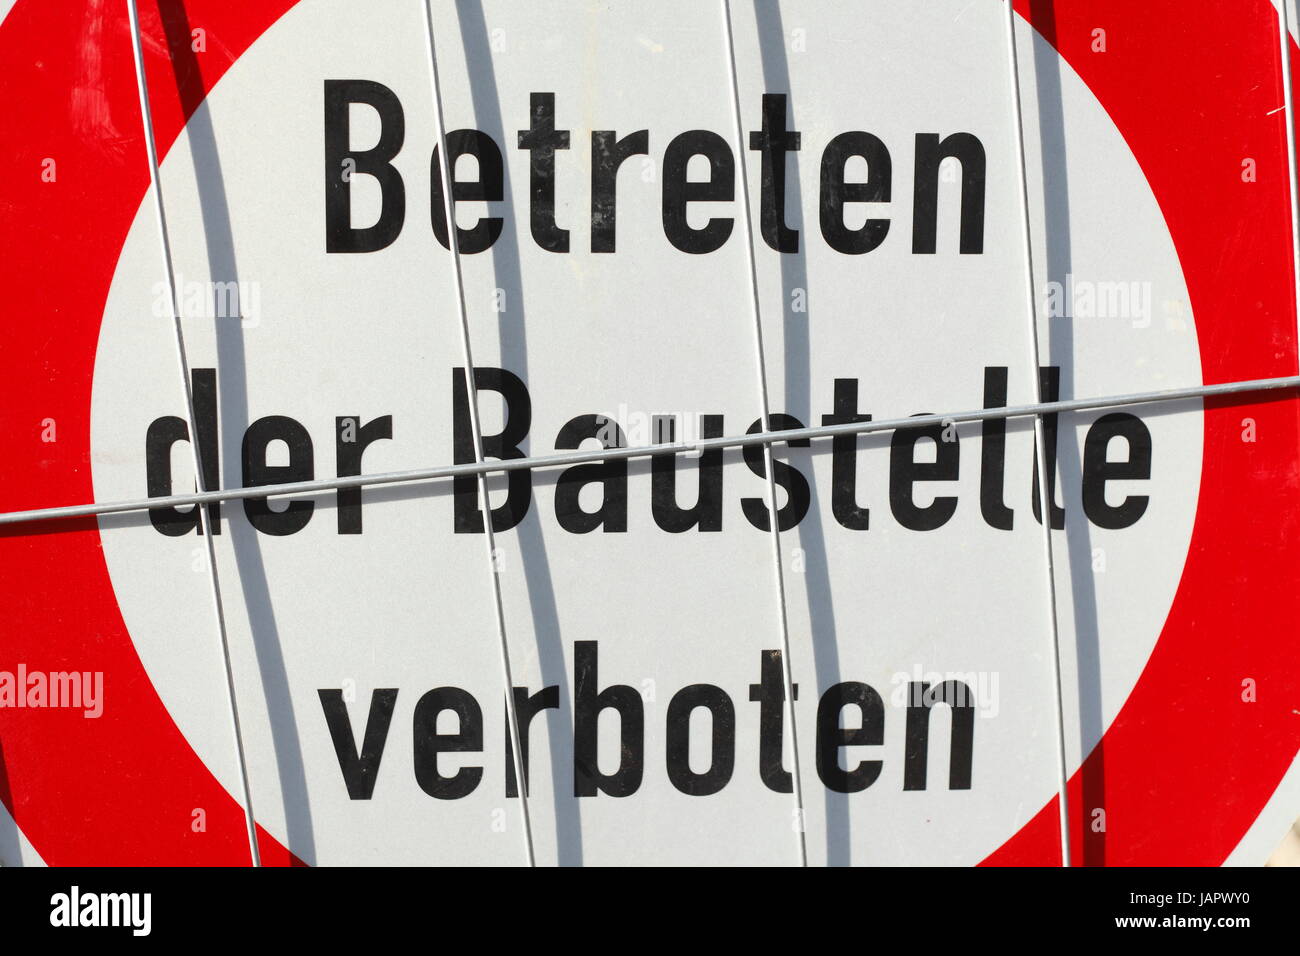 Schild Eingang der Baustelle verboten, Betreten der Baustelle verboten in deutscher Sprache Stockfoto